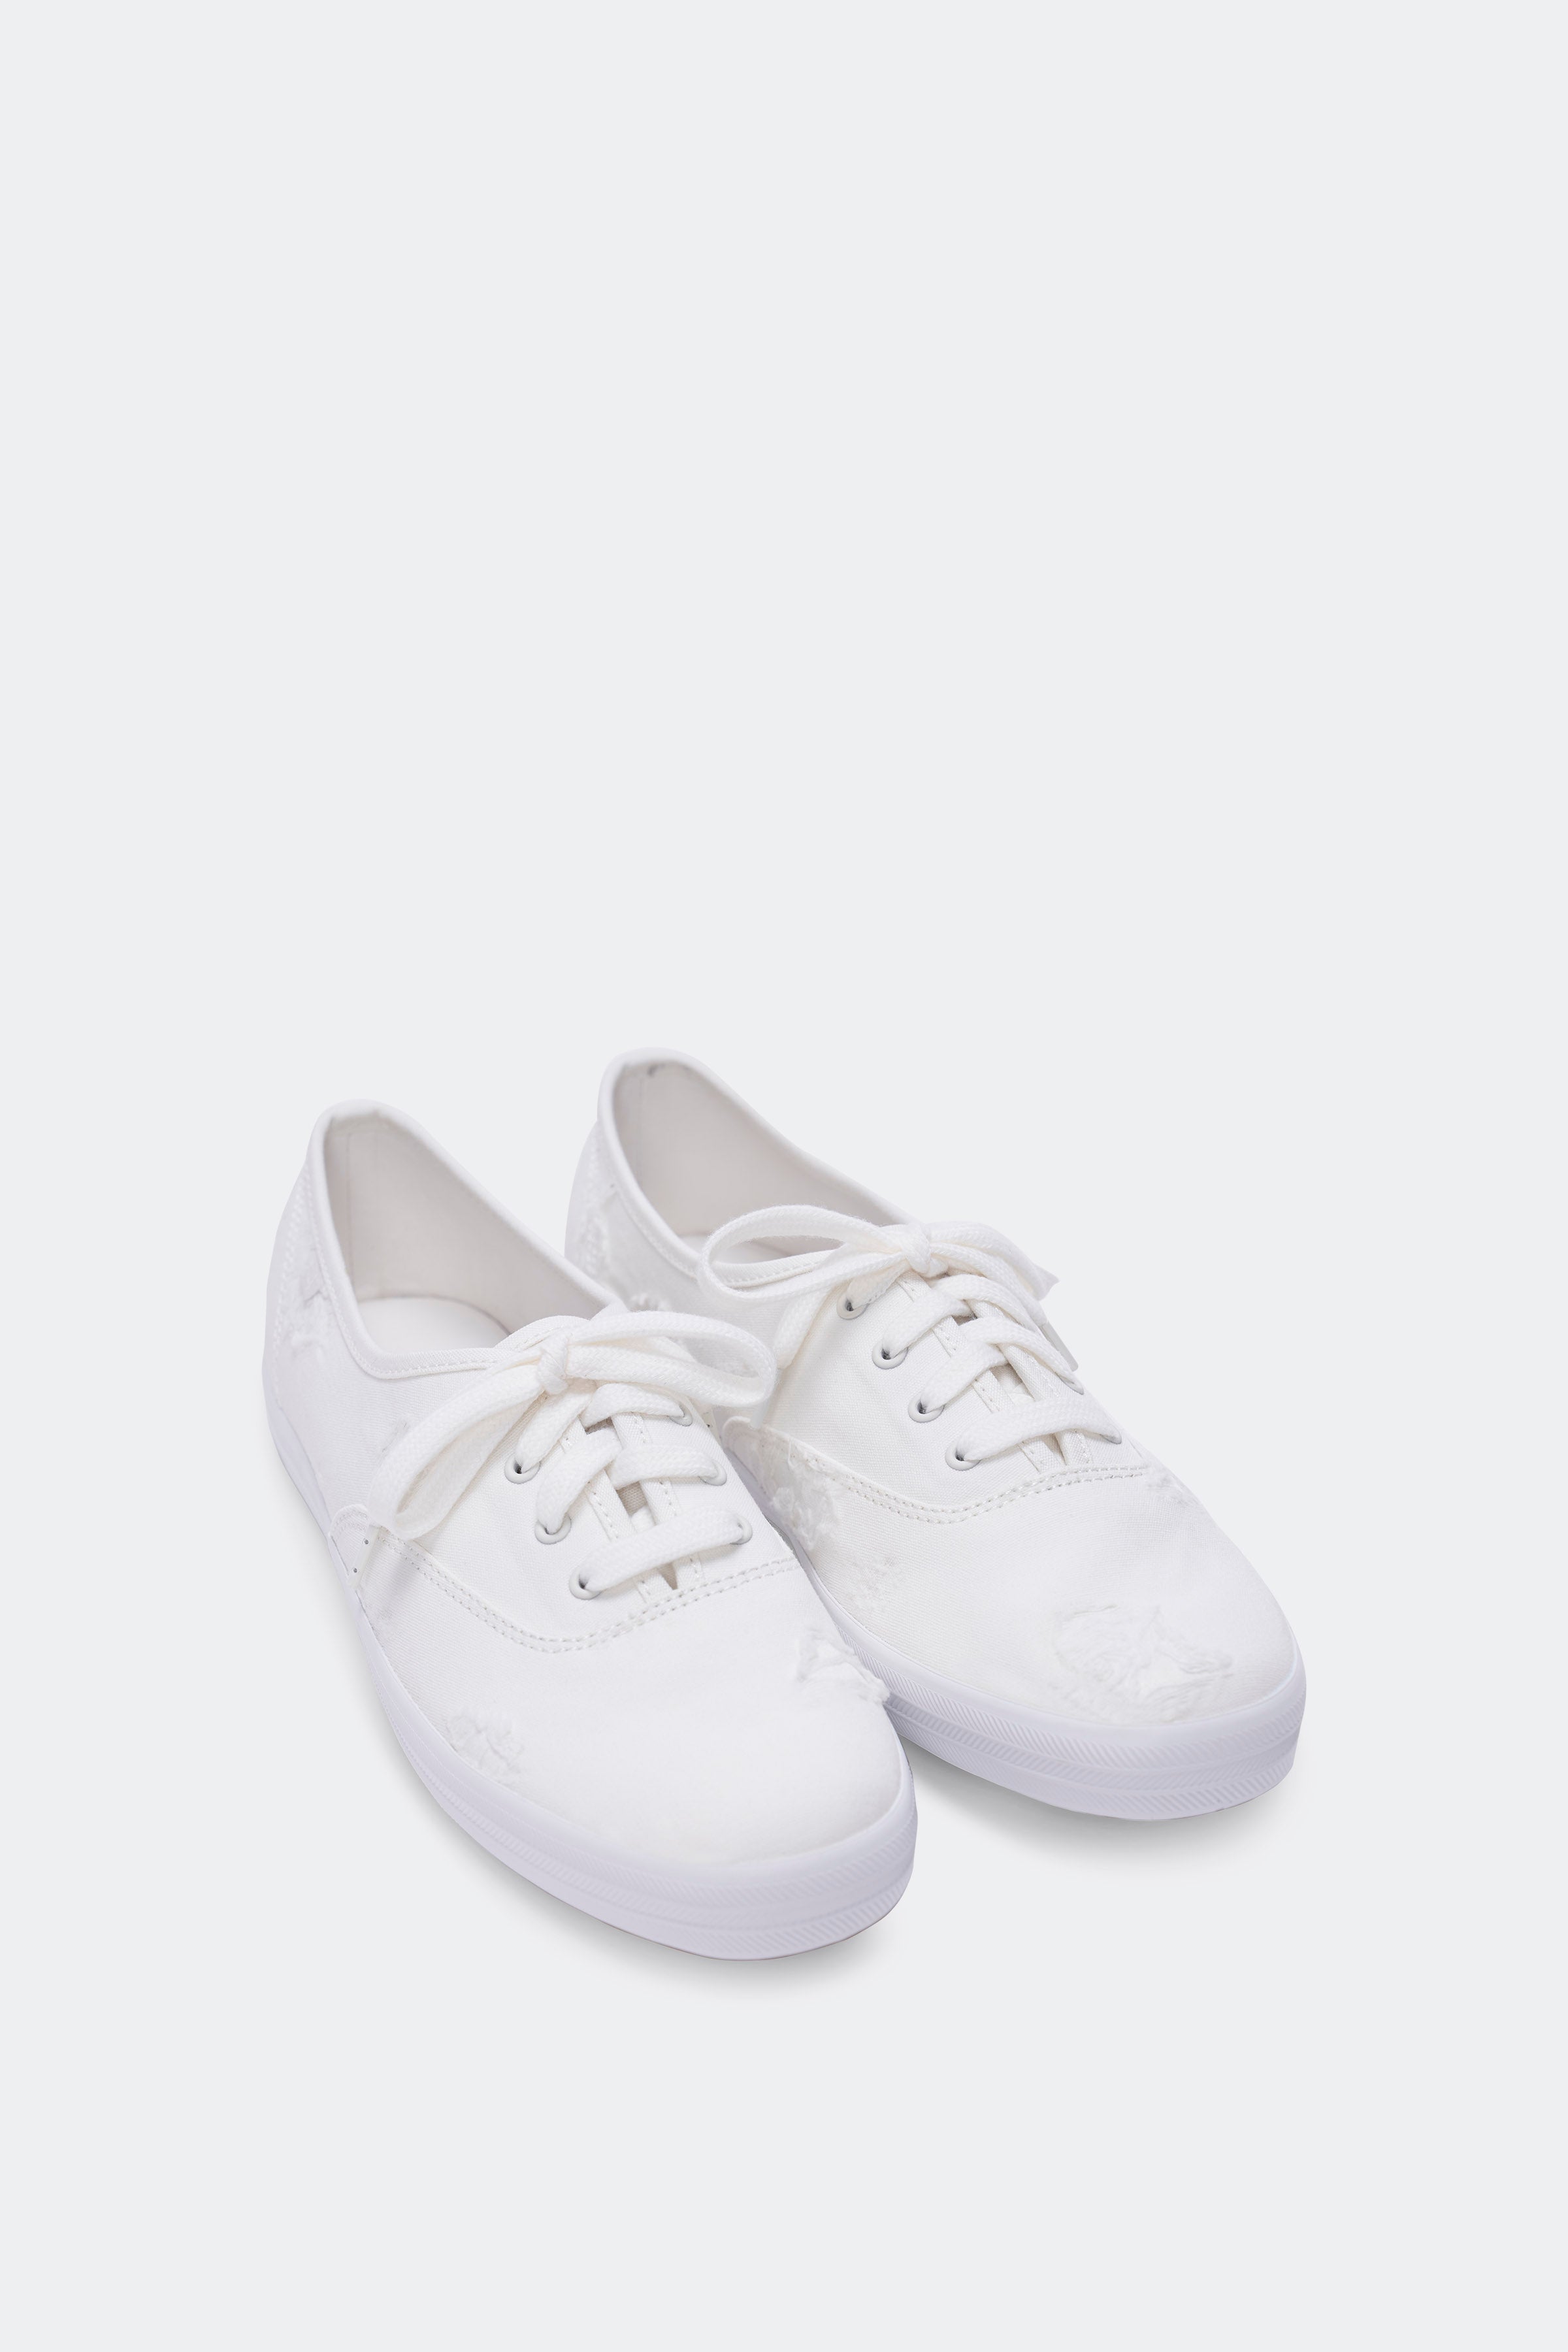 Keds Double Decker Canvas Slip-On Sneakers | Dillard's